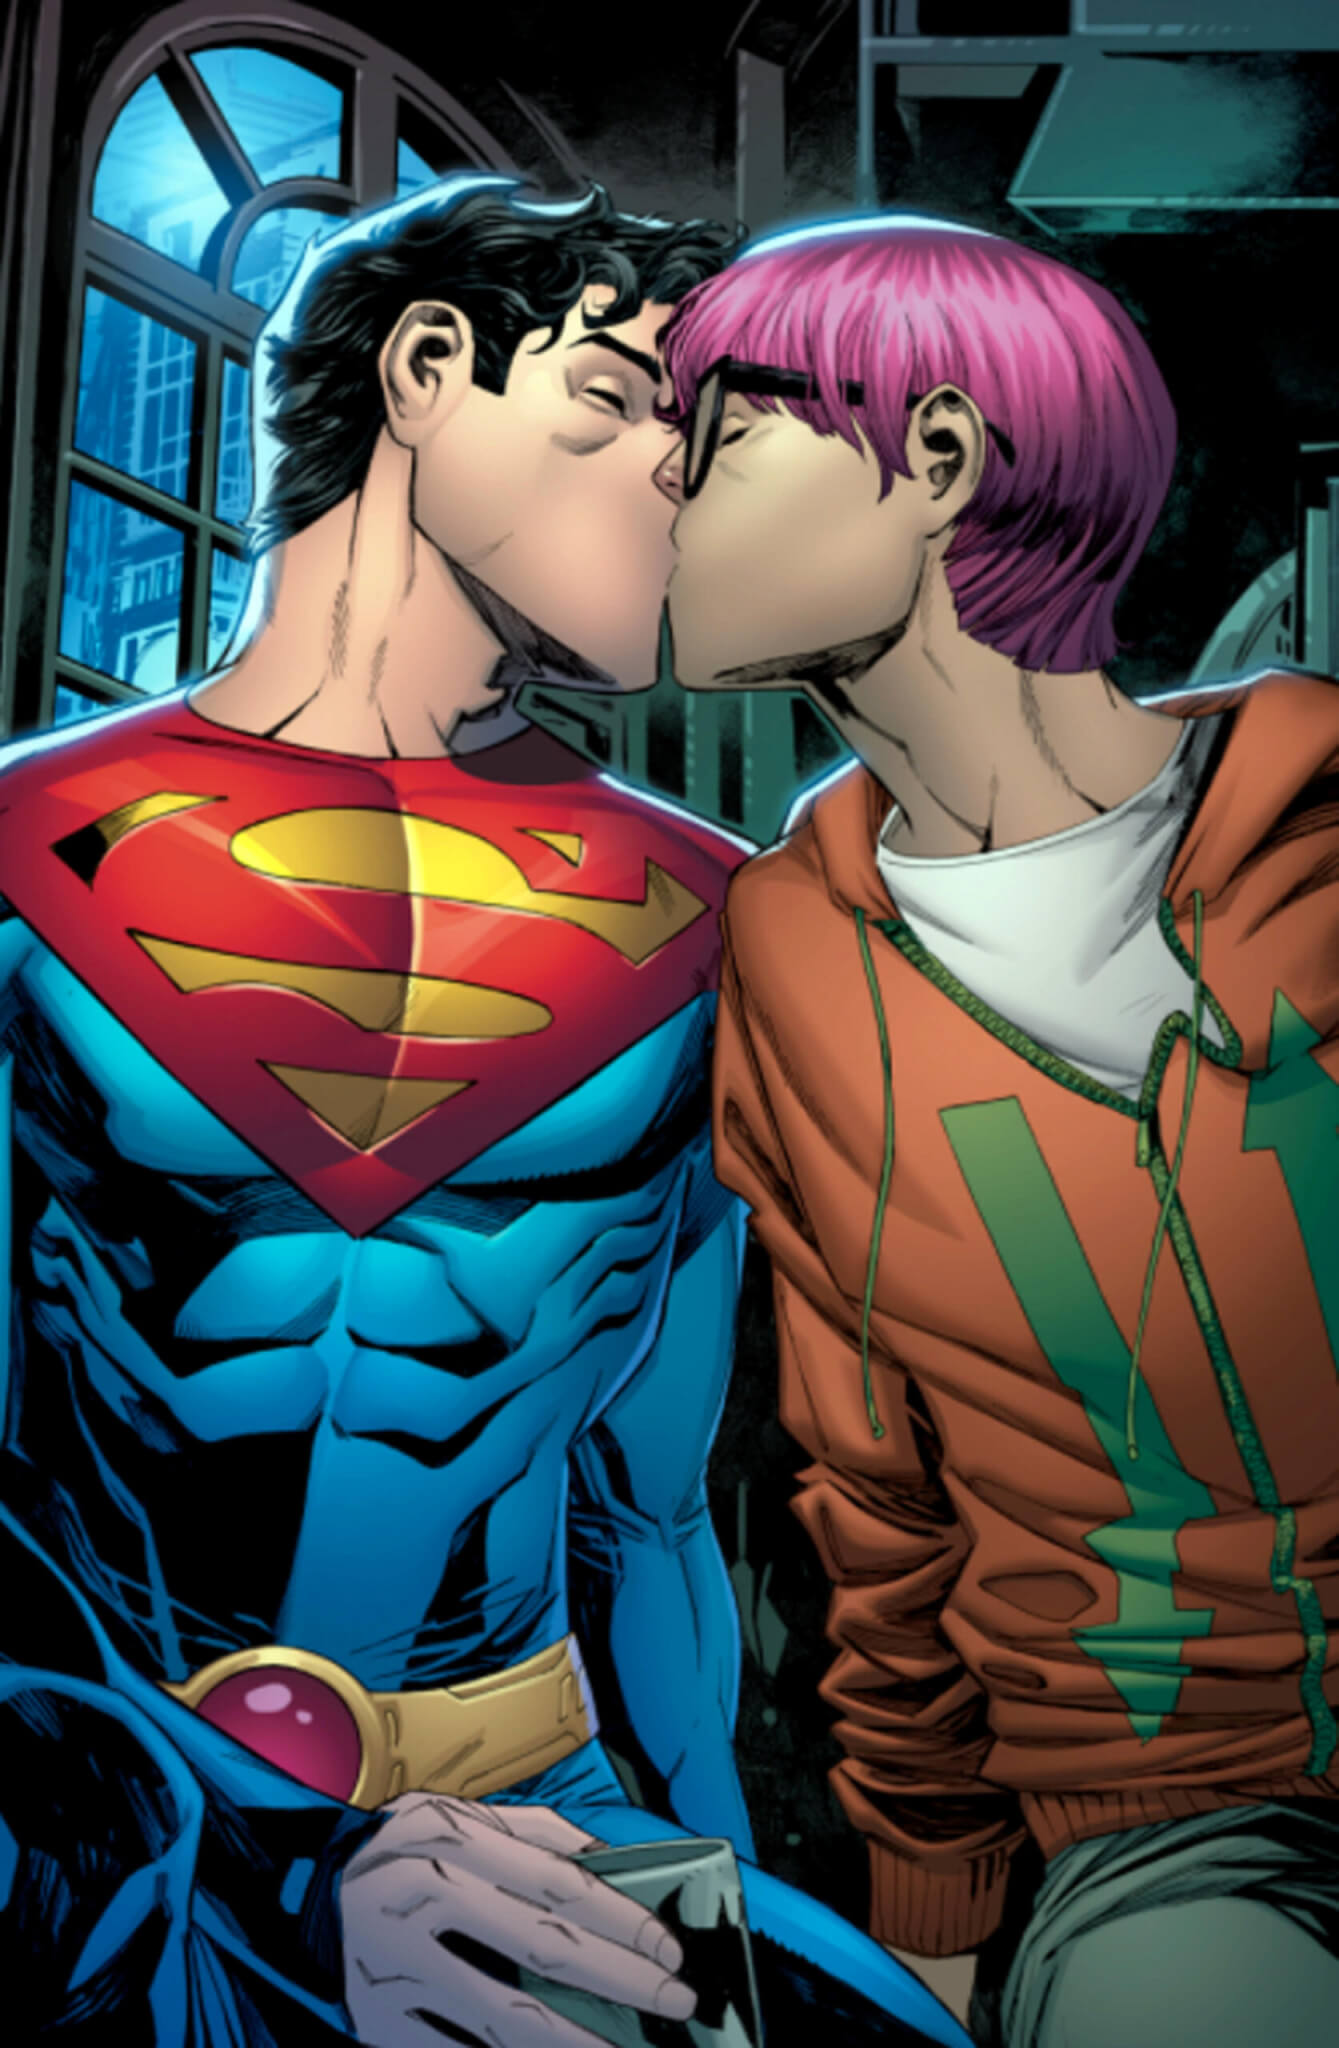 Superman bisex, i giornalisti maschi italiani traballano: abbiamo raccolto alcune reazioni - superman bisex scaled - Gay.it